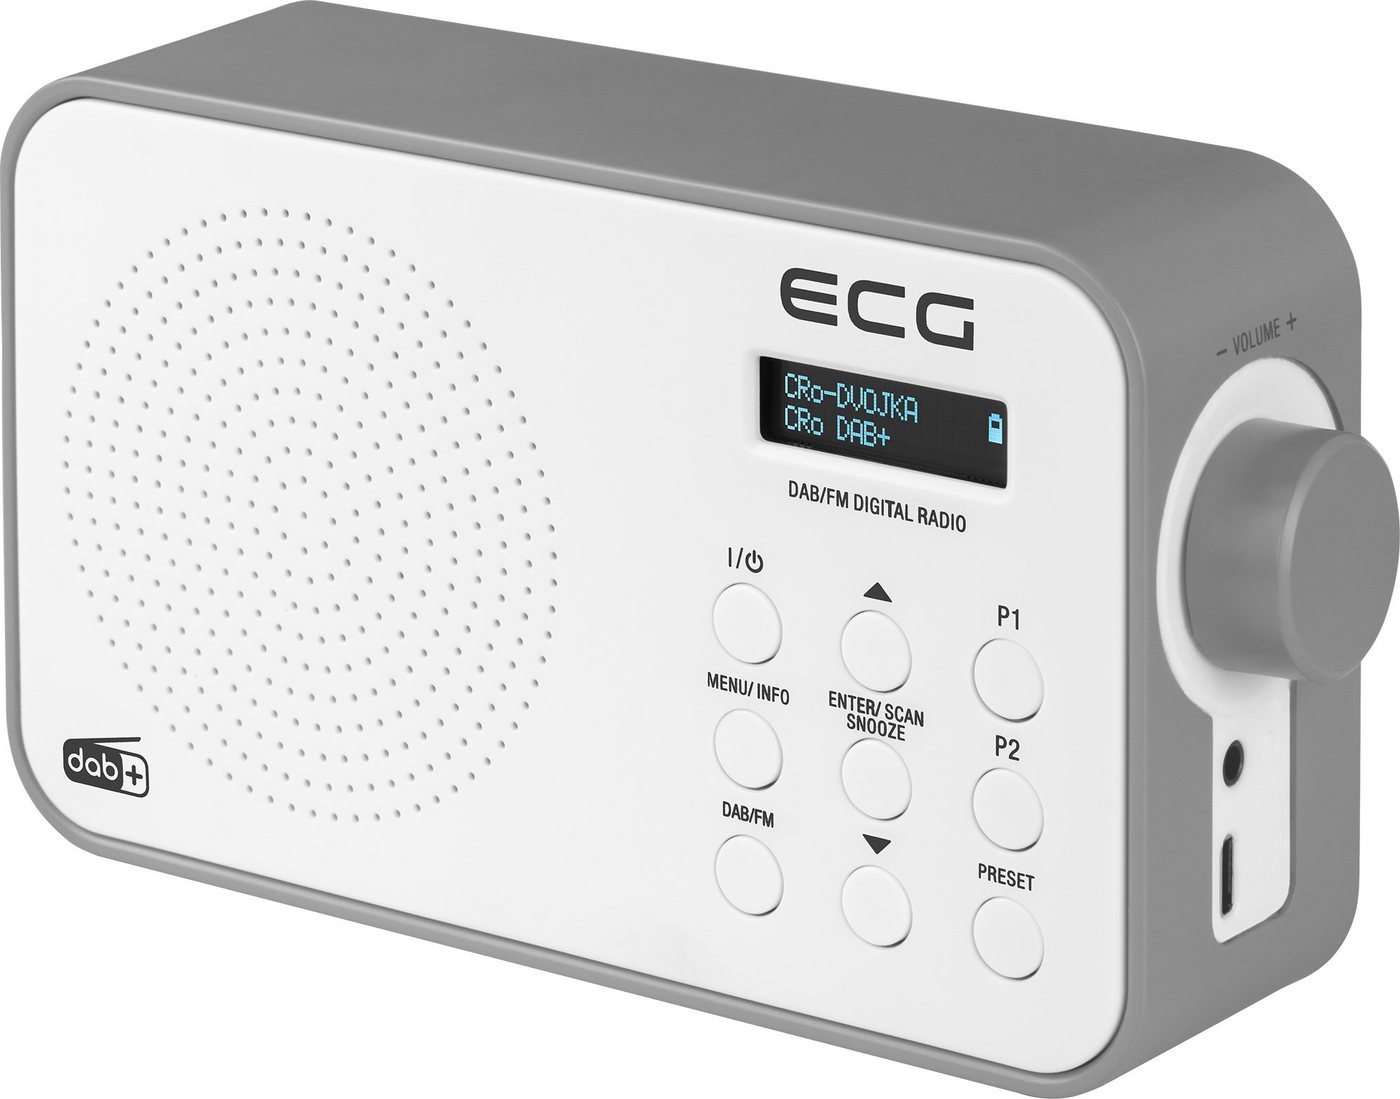 ECG RD 110 DAB Black Digitalradio (DAB) (Digitalradio (DAB), FM, Tragbar, Wecker, Timer, Snoozer, 1,00 W, USB, DAB+, FM, Tragbar) von ECG